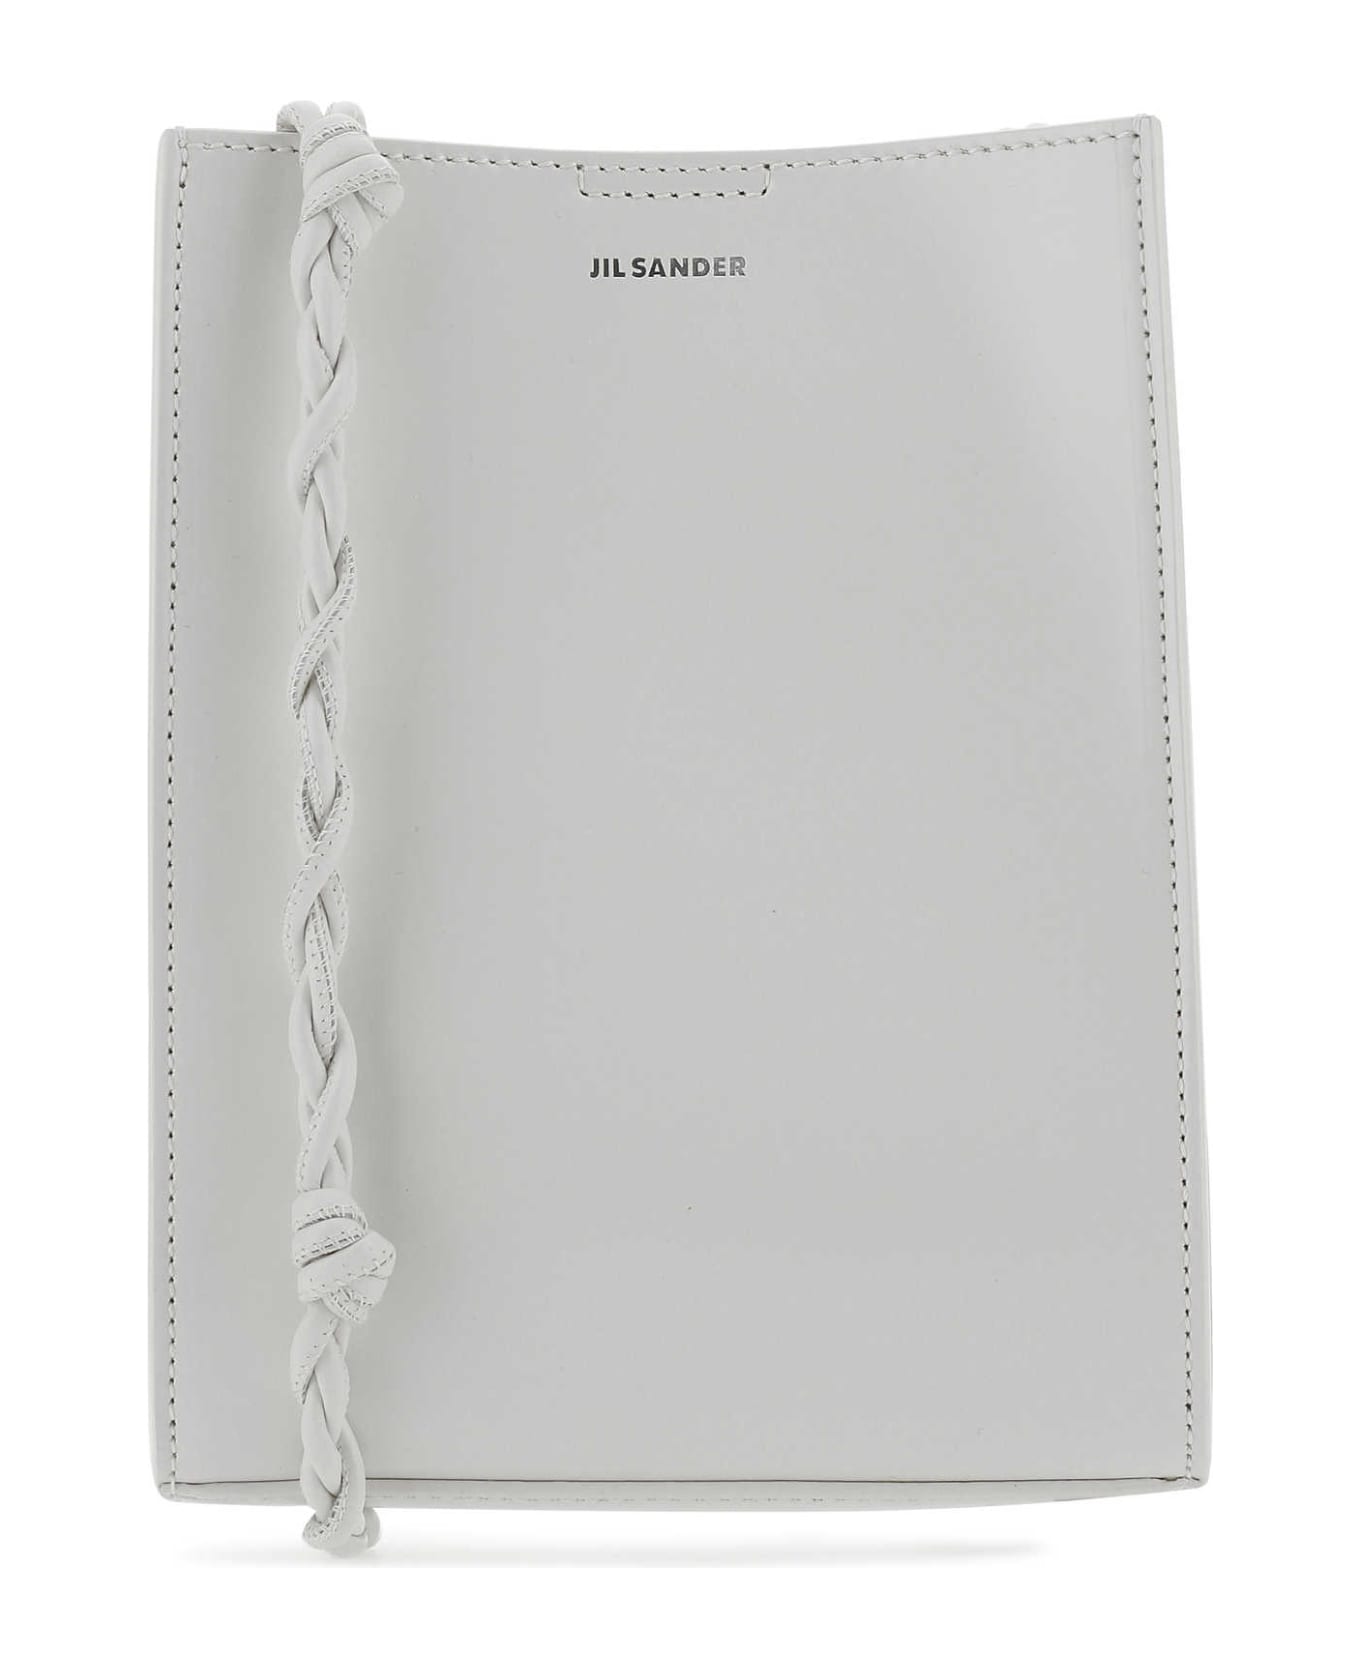 Jil Sander Light Grey Leather Small Tangle Shoulder Bag - 056